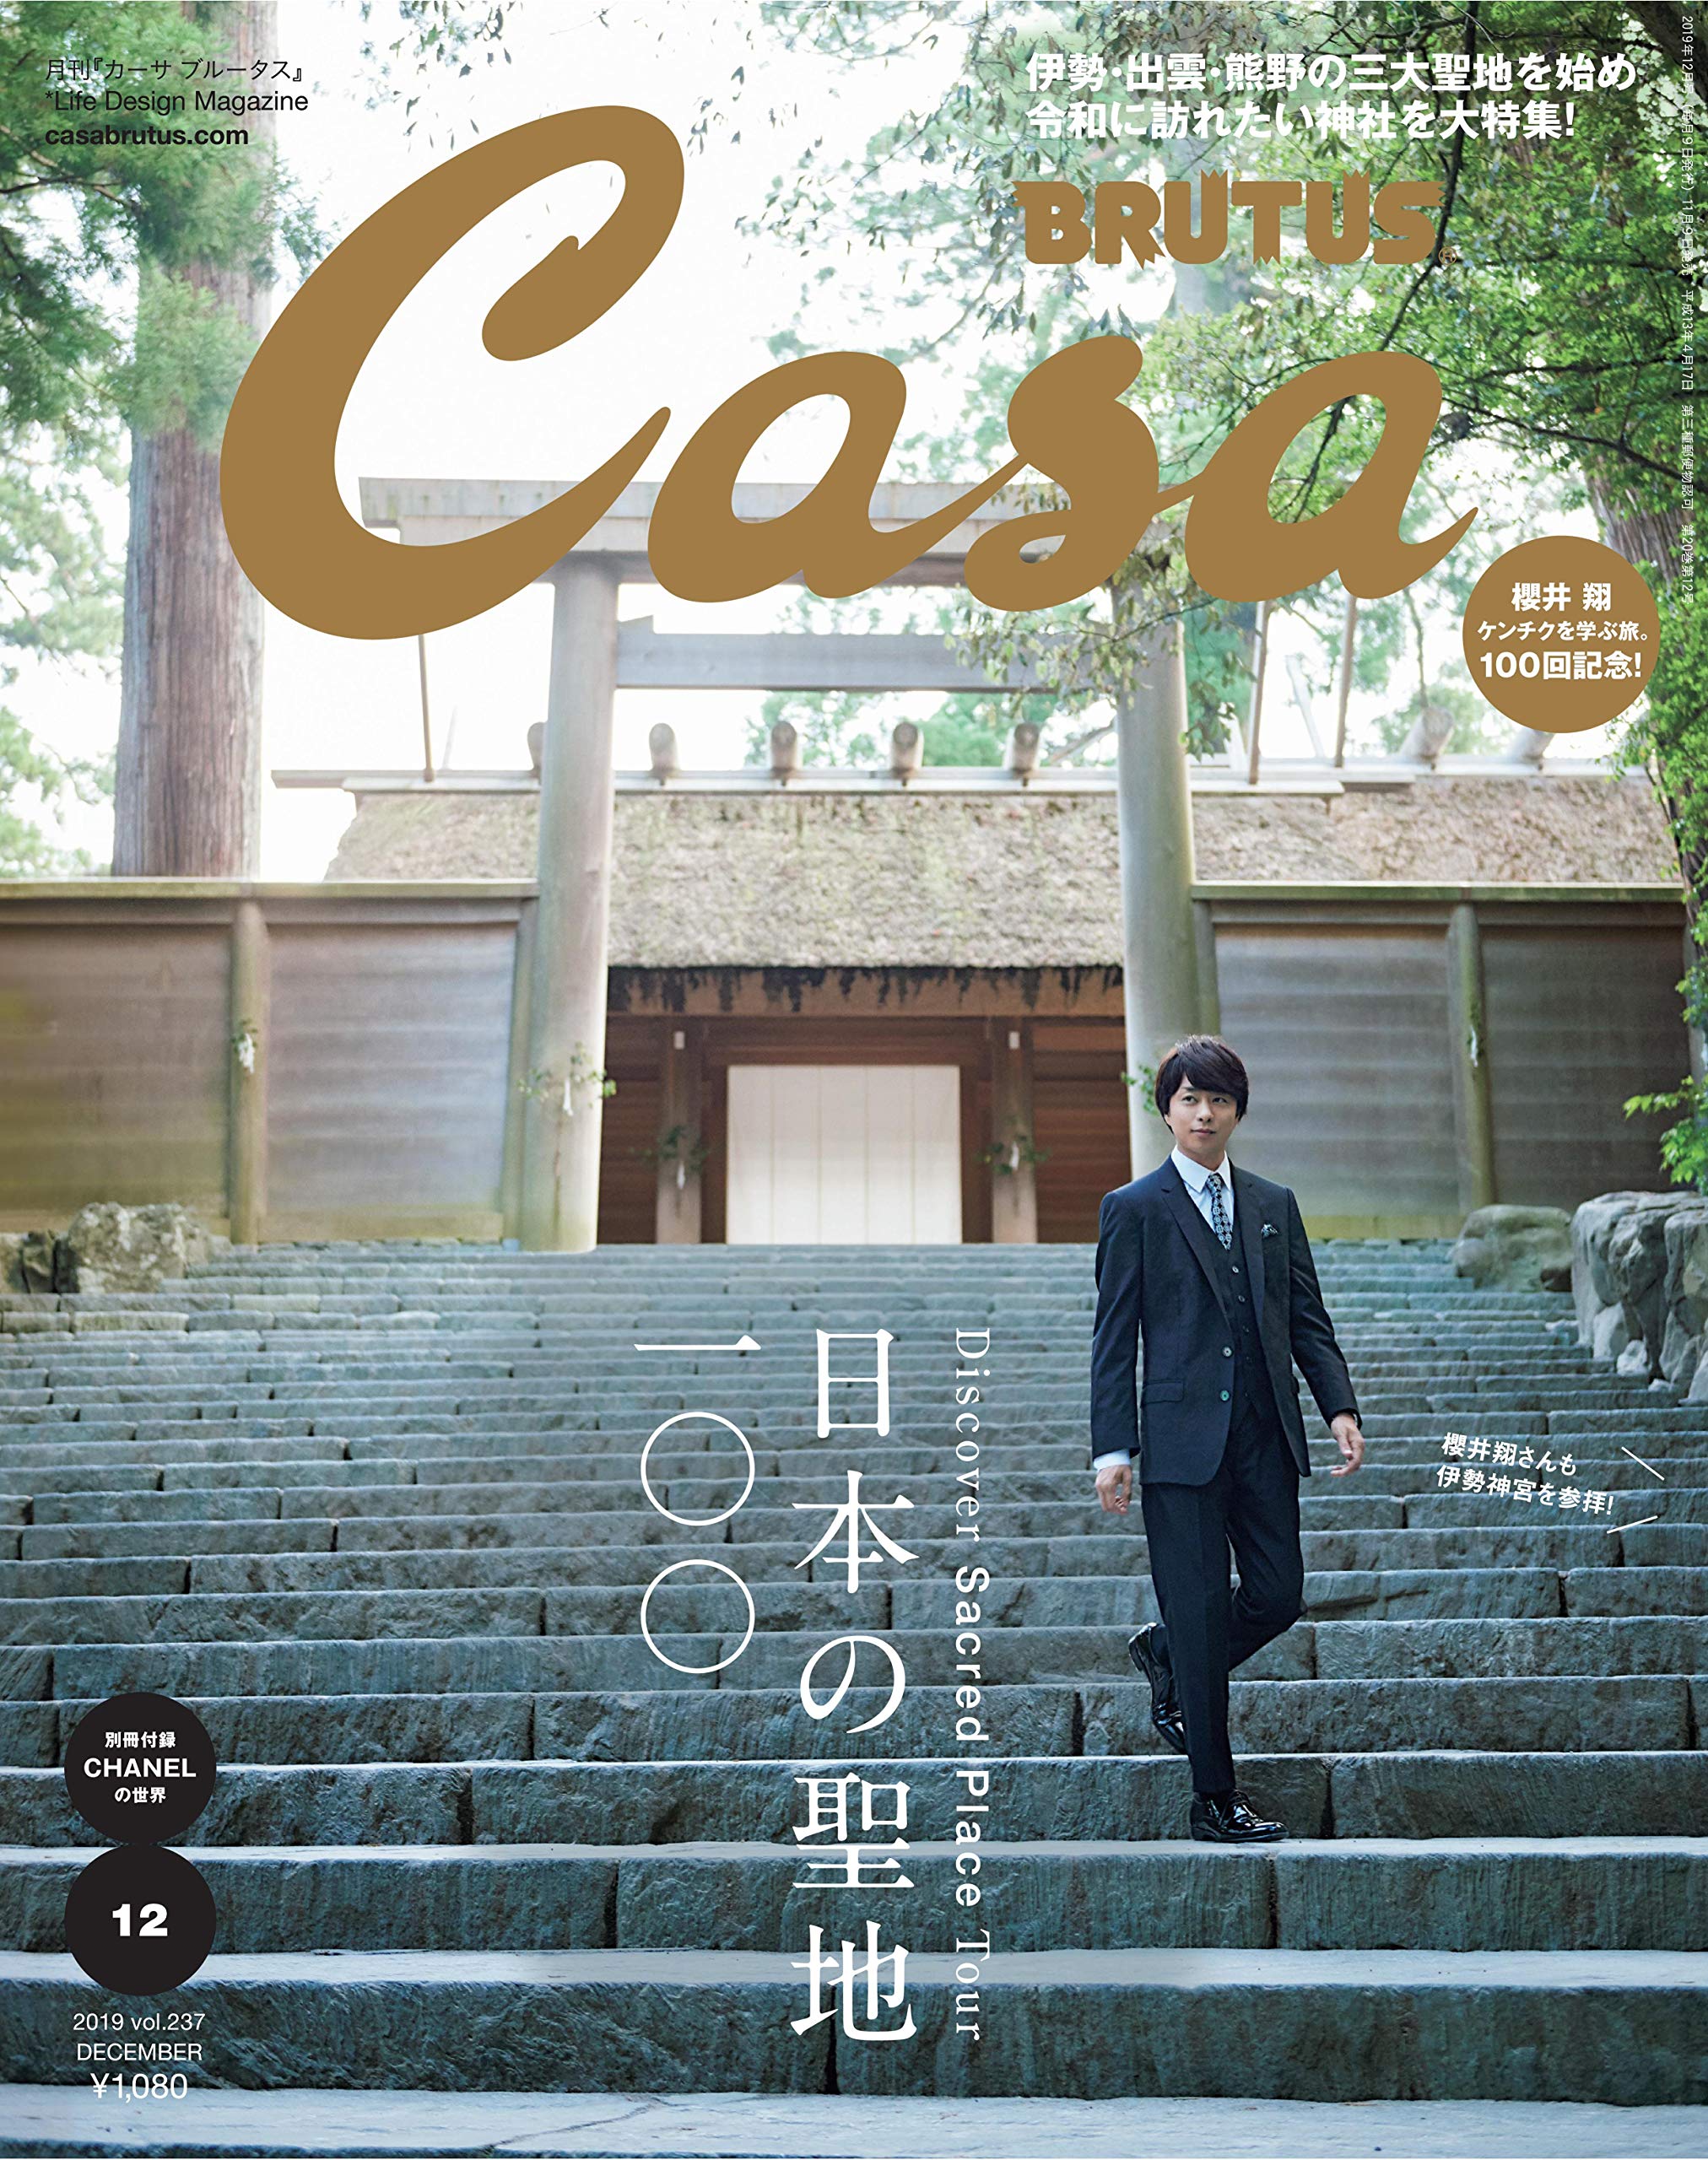 Casa BRUTUS 2019年 12月号 日本の聖地100 – Fumihiko Sano Studio